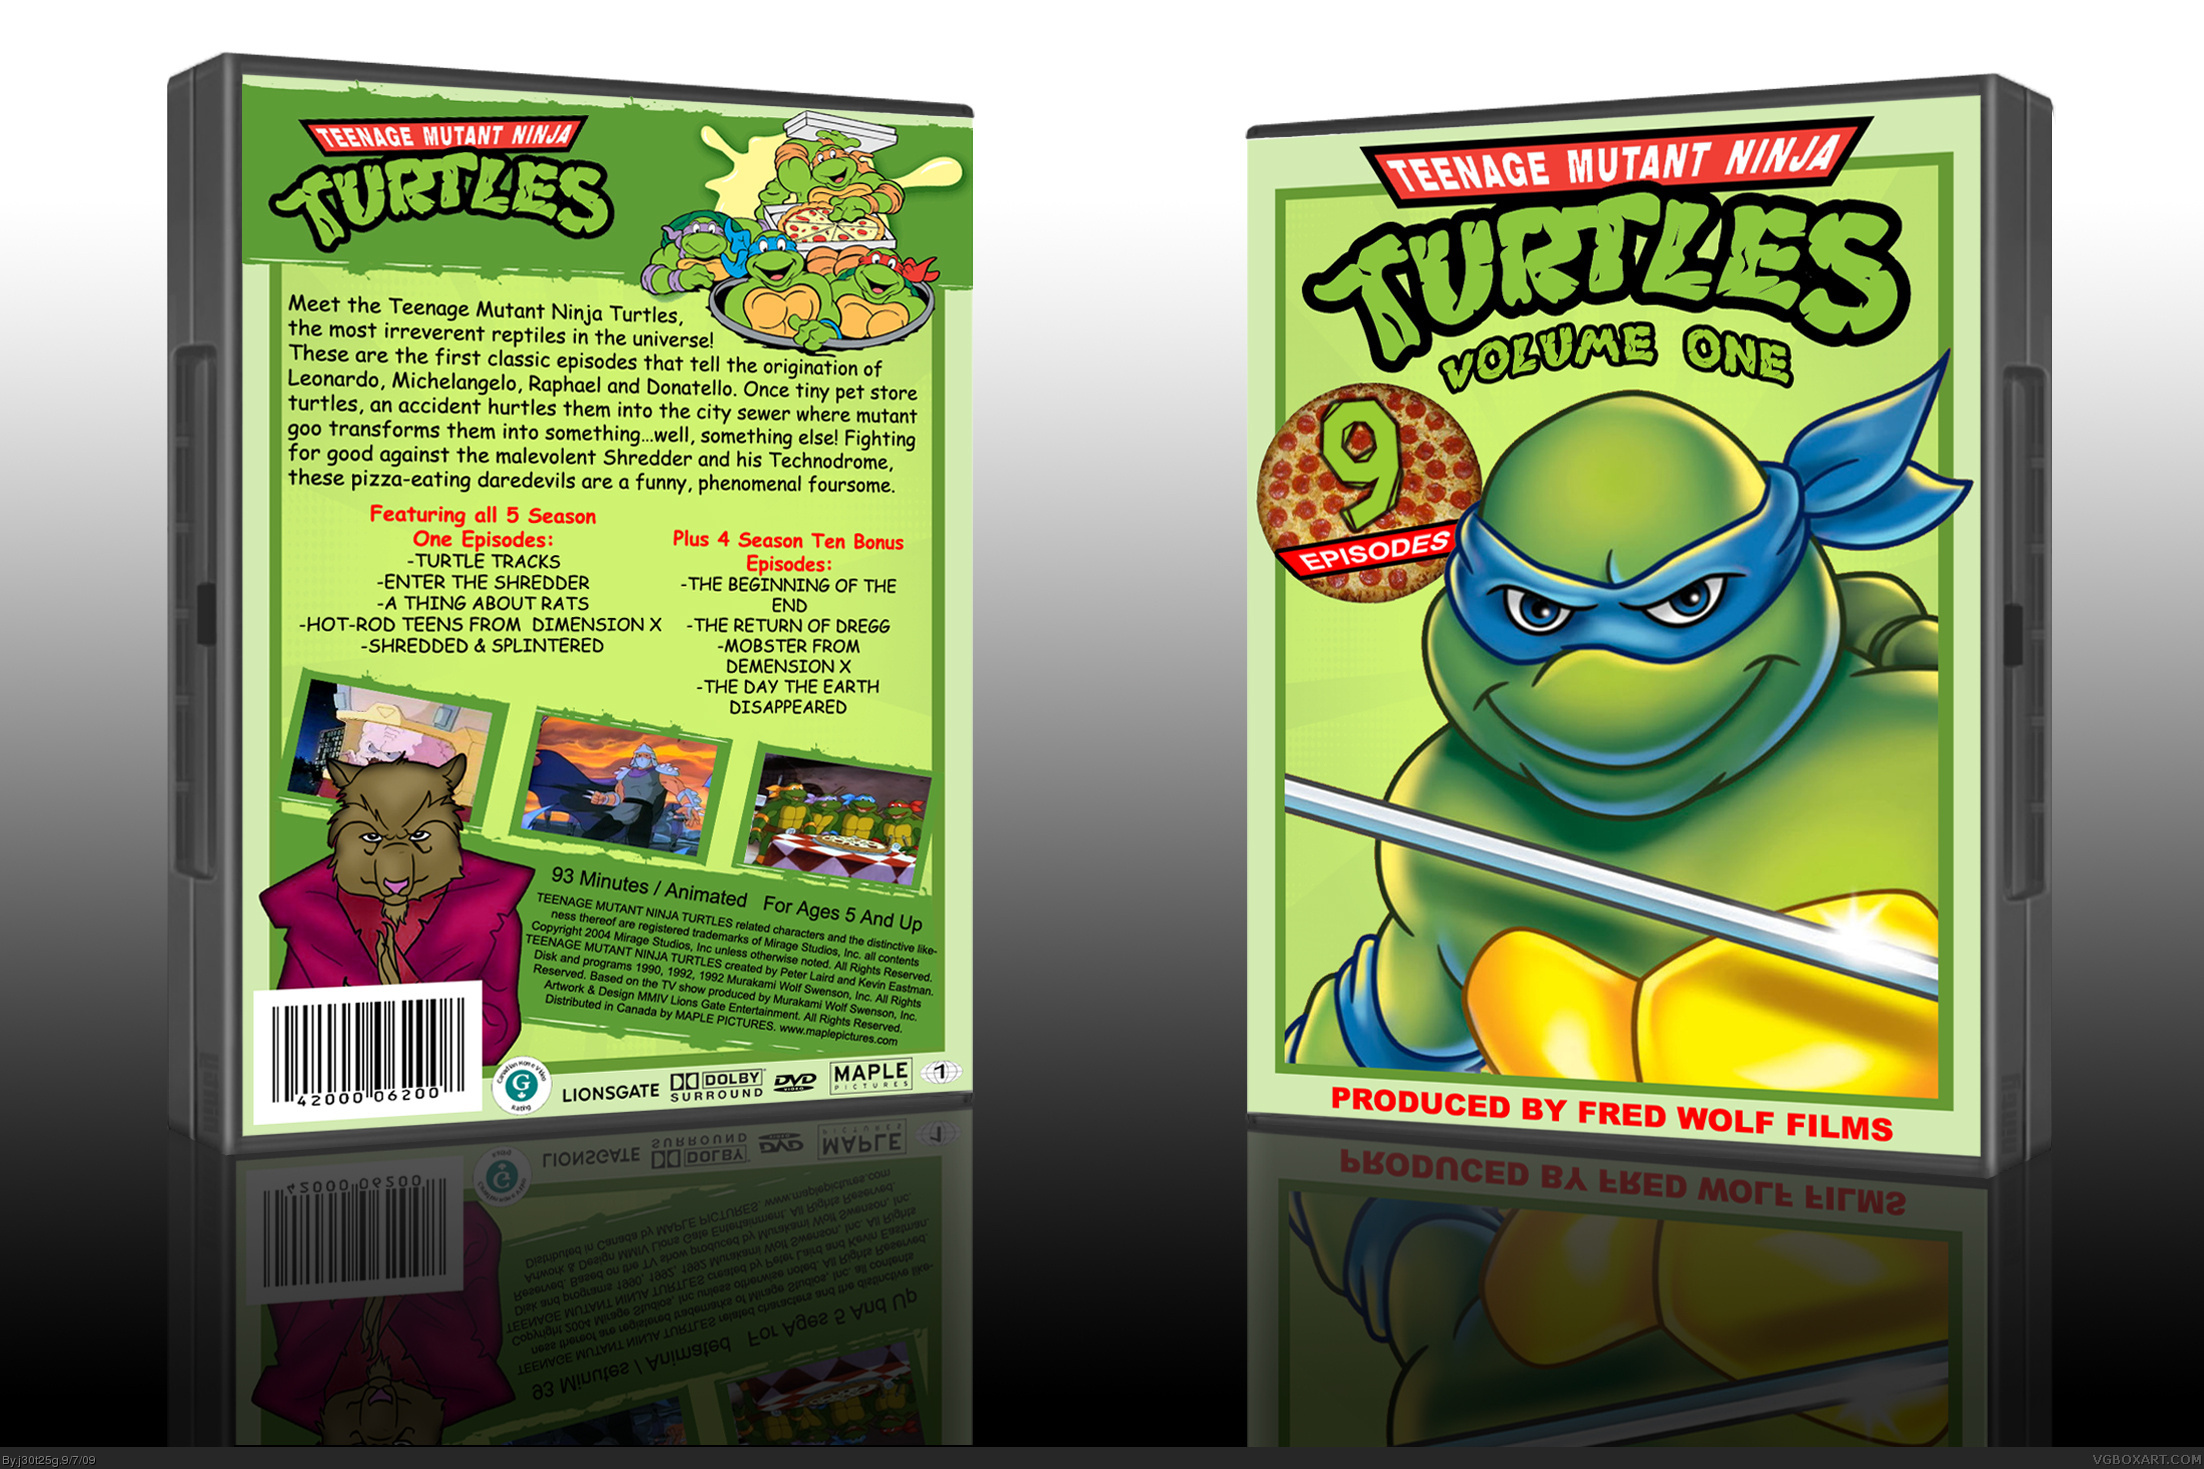 Teenage Mutant Ninja Turtles: Volume 1 box cover